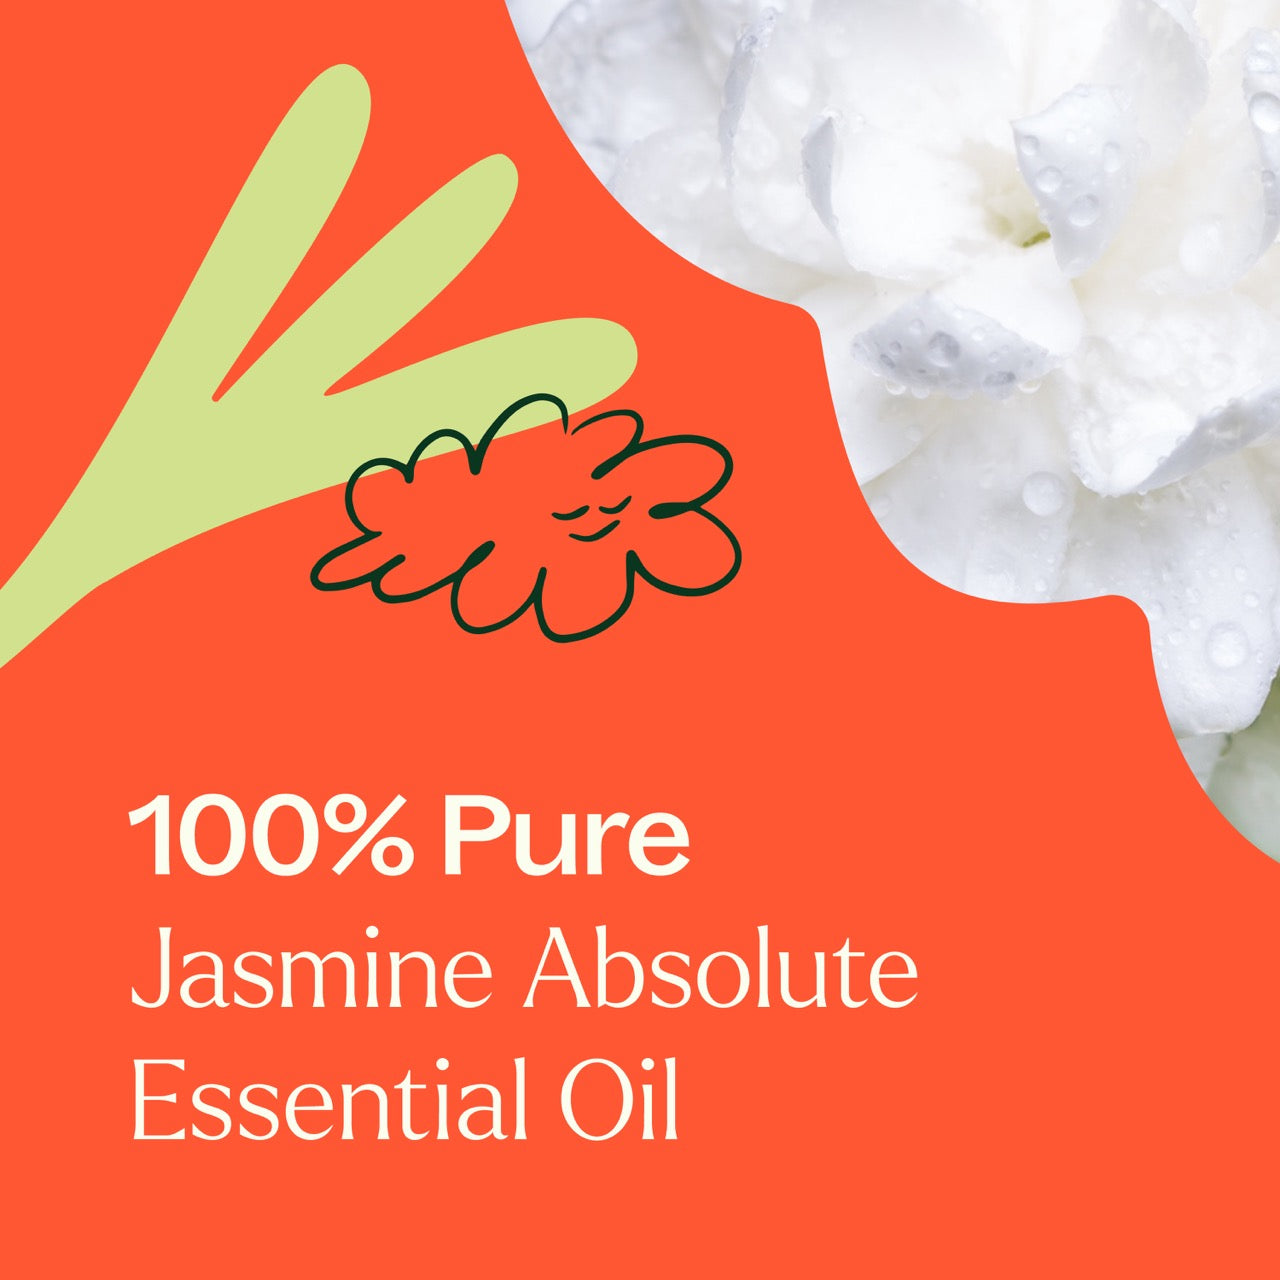 100% pure Jasmine Absolute